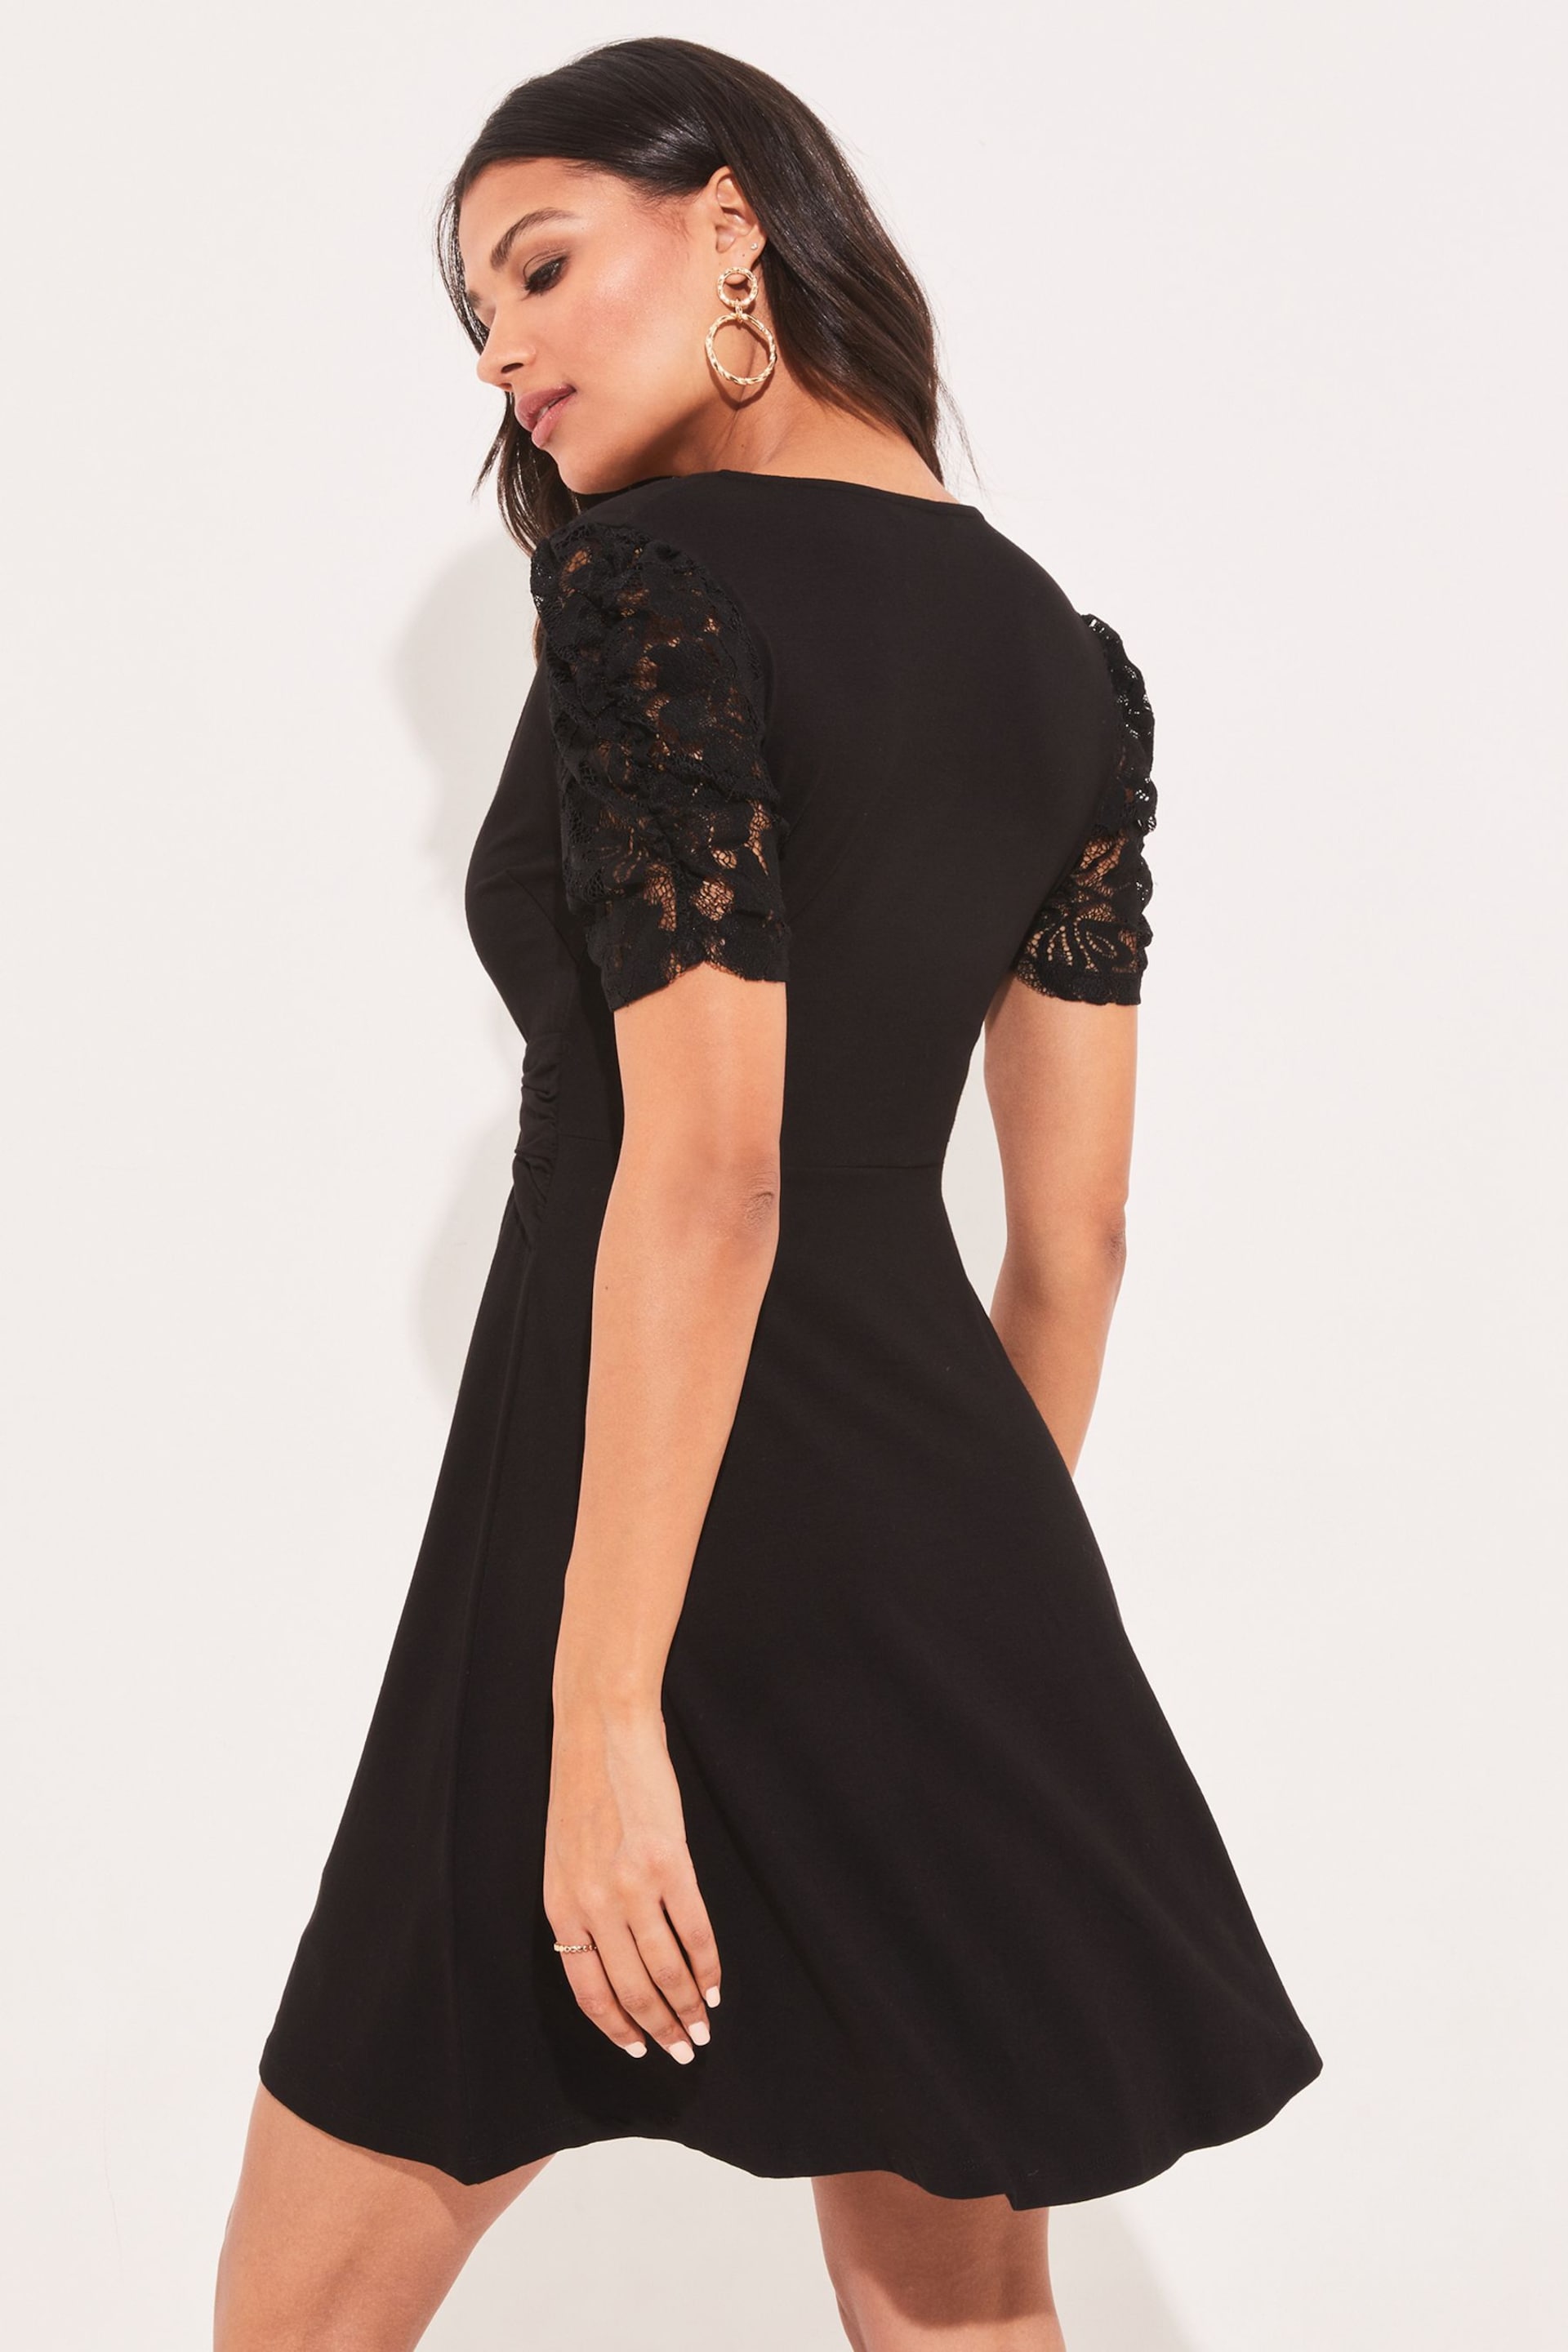 Lipsy Black Lace Jersey Knot Front Mini Skater Dress - Image 2 of 4